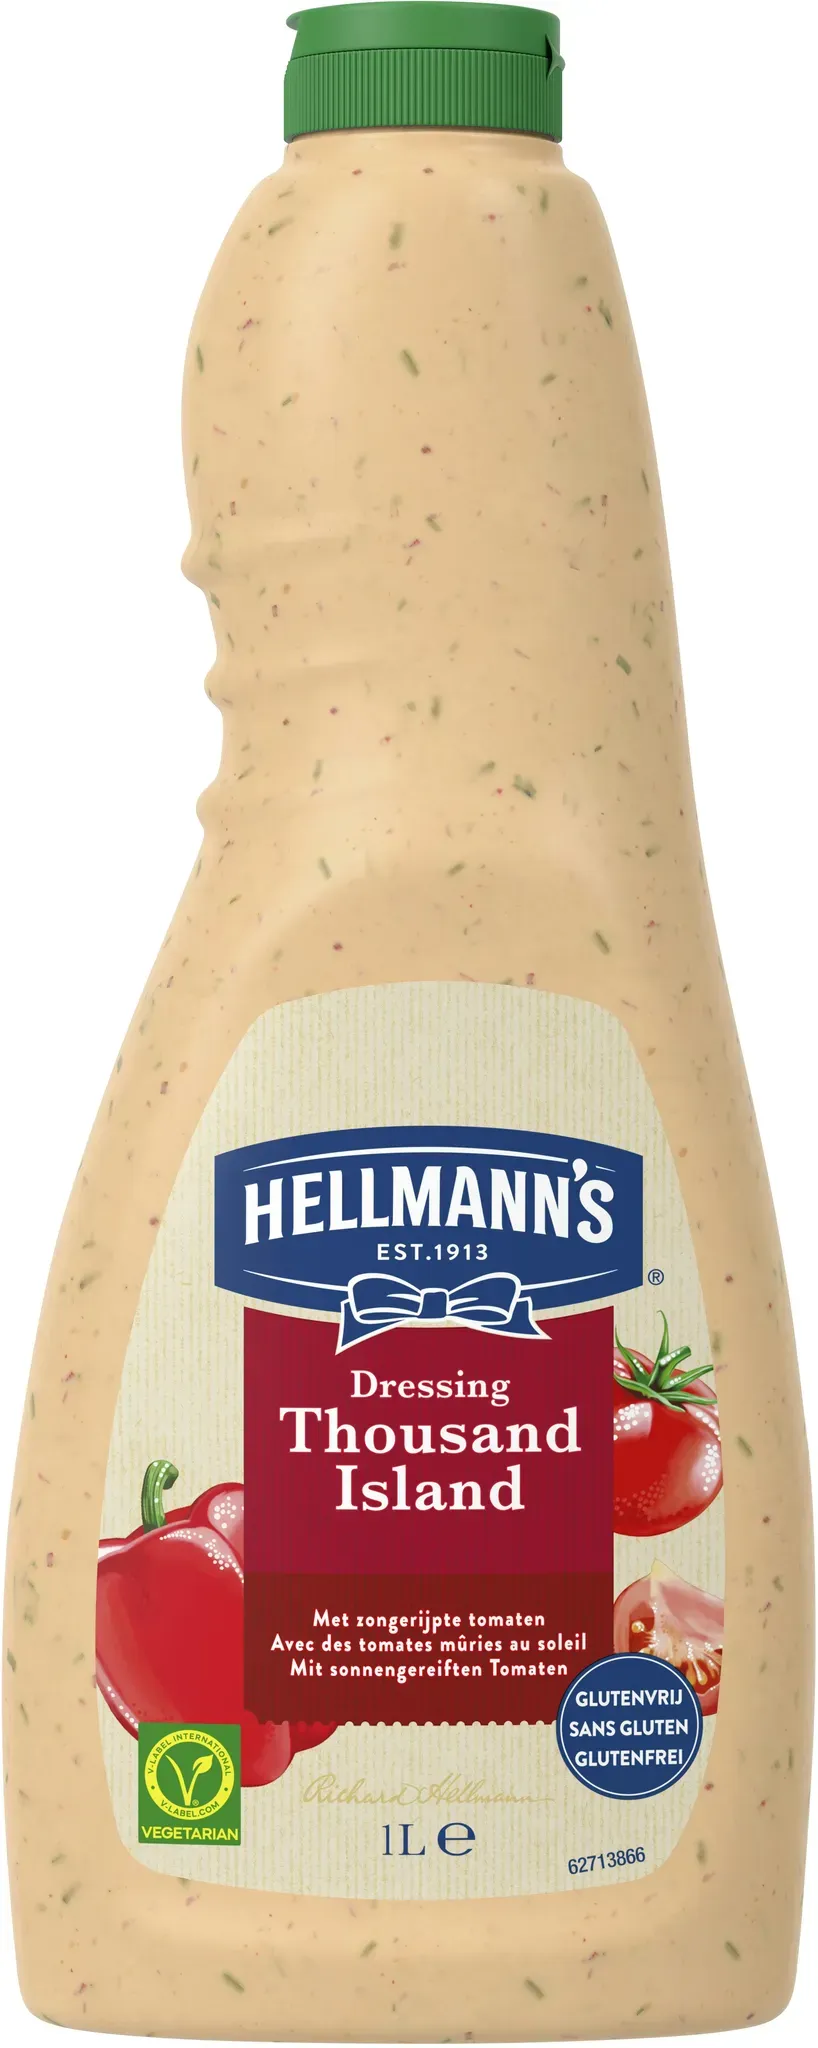 HELLMAN'S Hellmann ́s 1000 Islands Dressing 1L Flasche